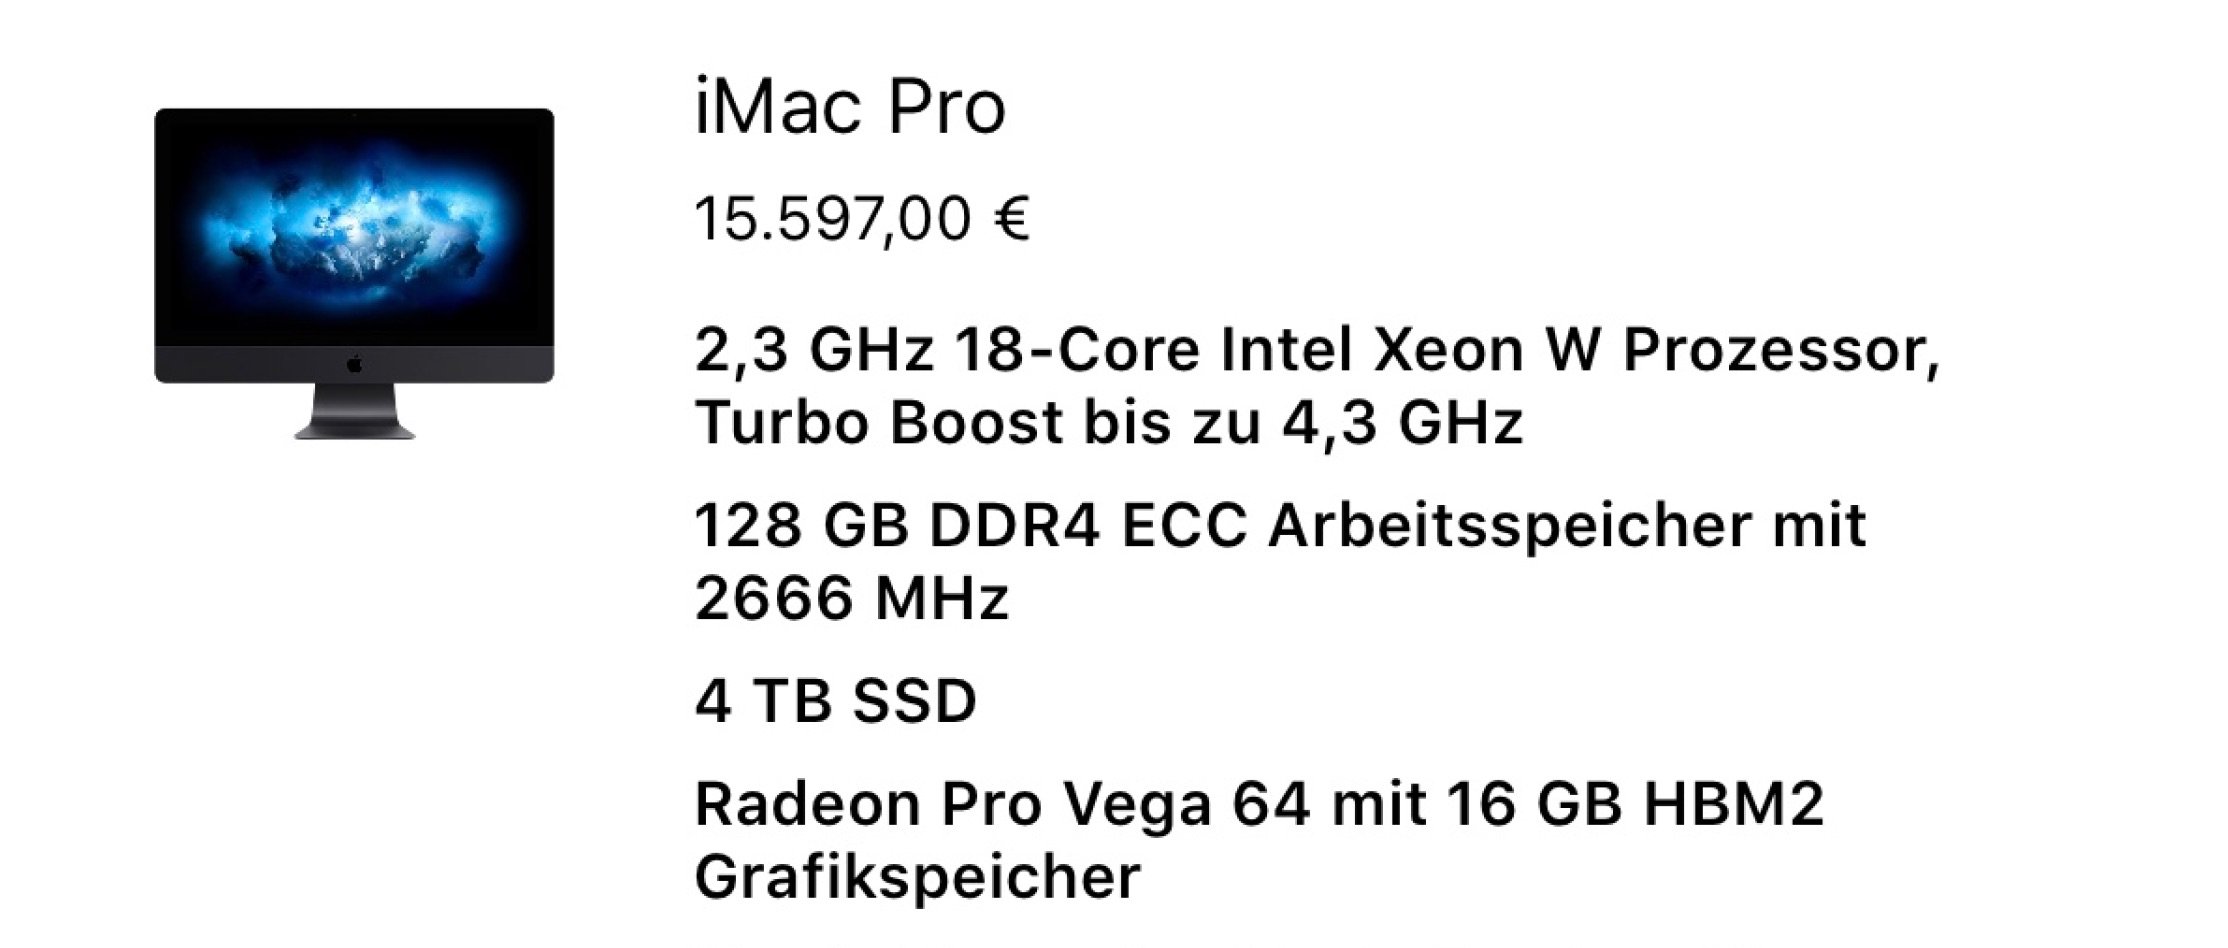 Schnäppchen: iMac Pro Preise von 5499 bis 16000 Euro! 1